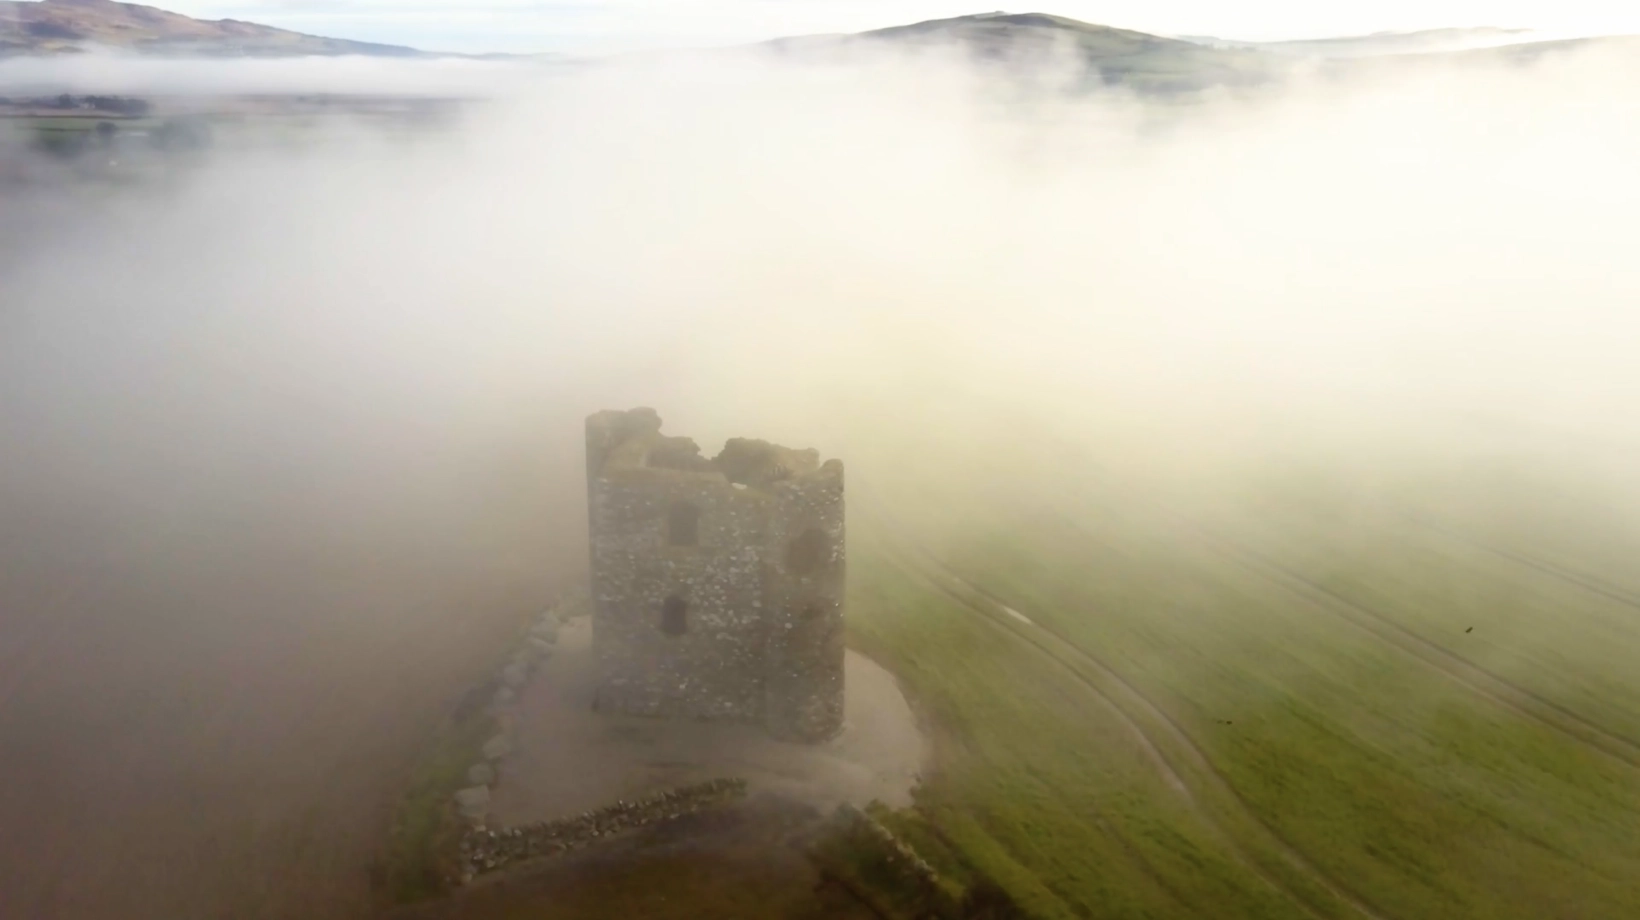 Burt Castle, Donegal